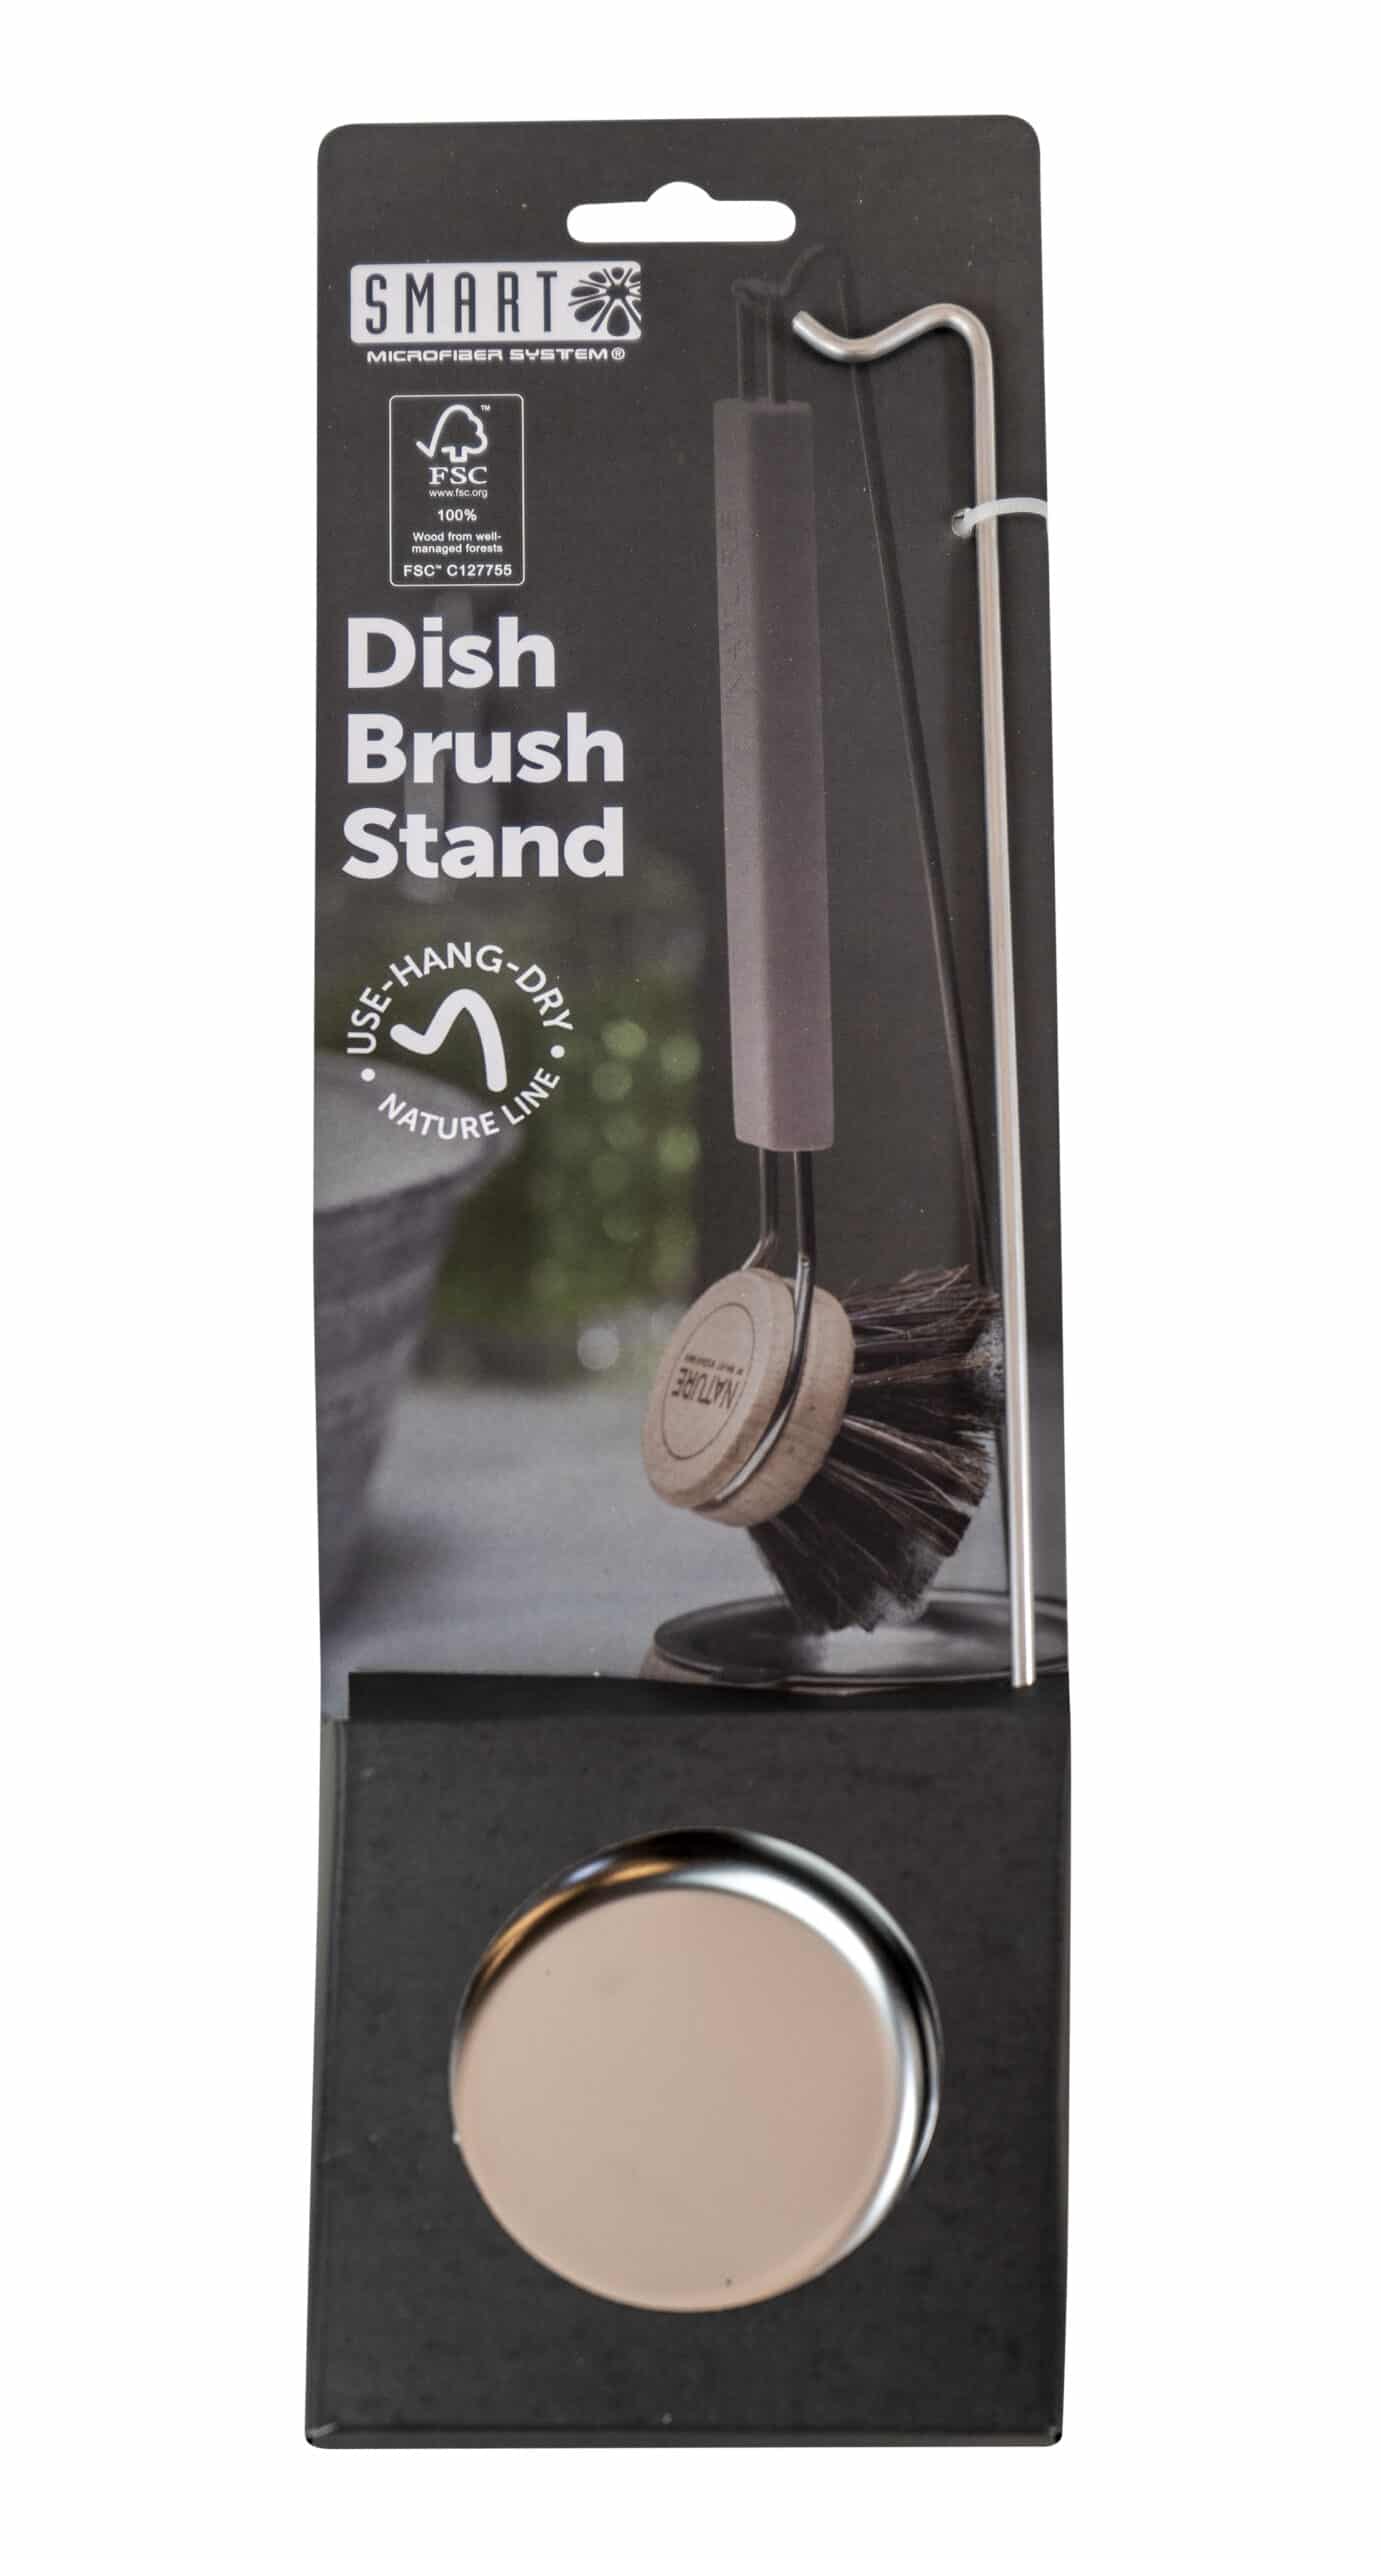 Dish Brush Stand